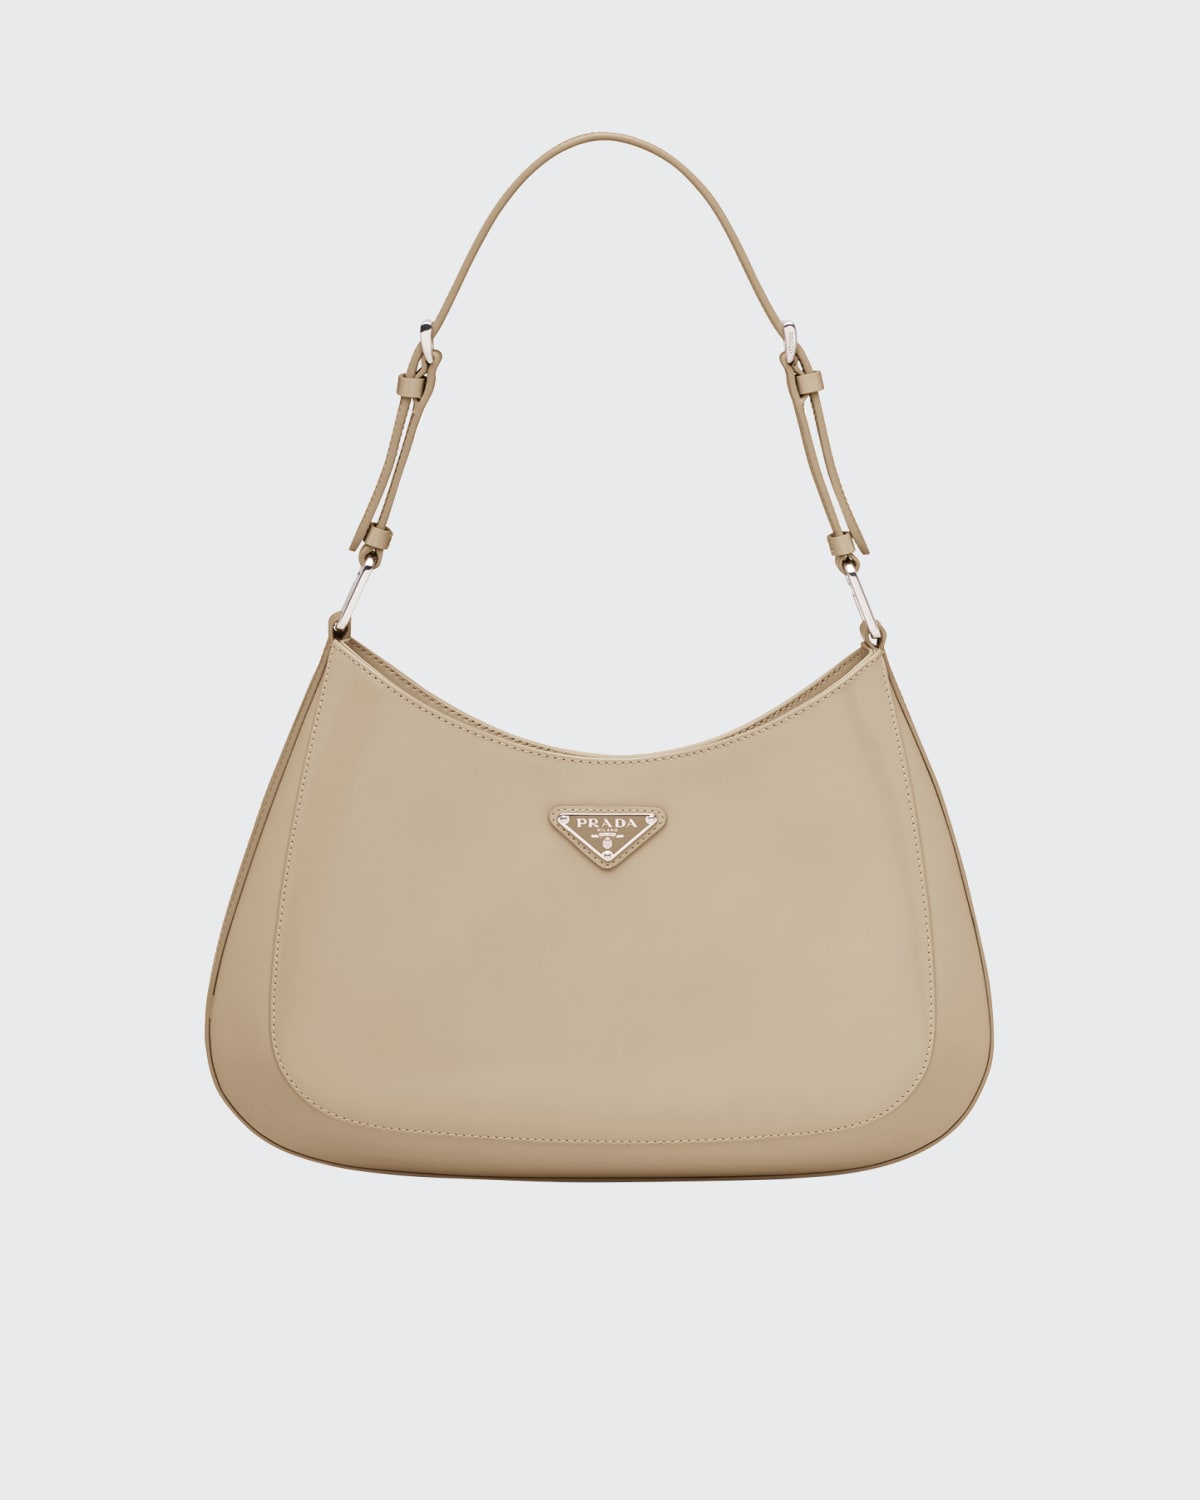 Prada Shoulder Handbag | bergdorfgoodman.com